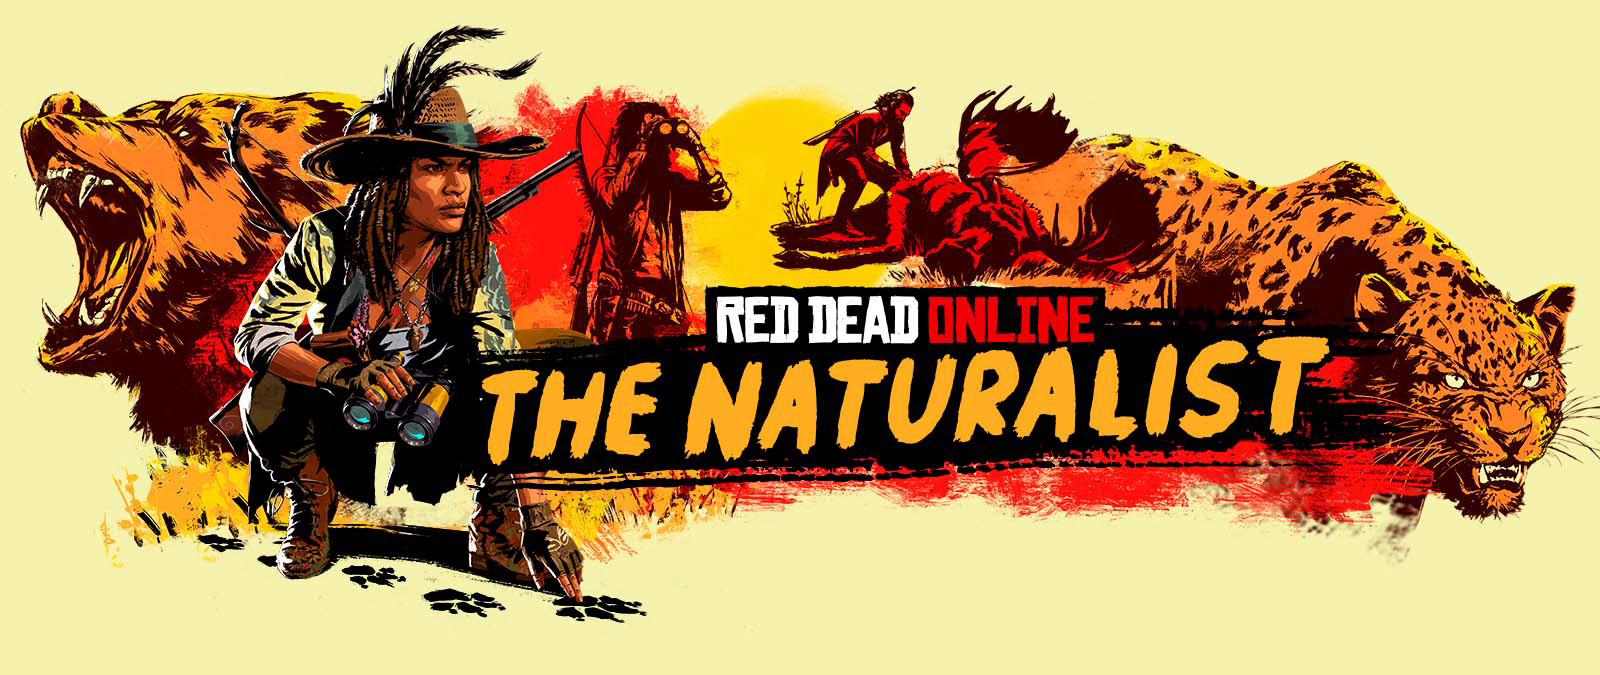 Red Dead Online. Naturalista. Postavy stopující a lovící velká zvířata.